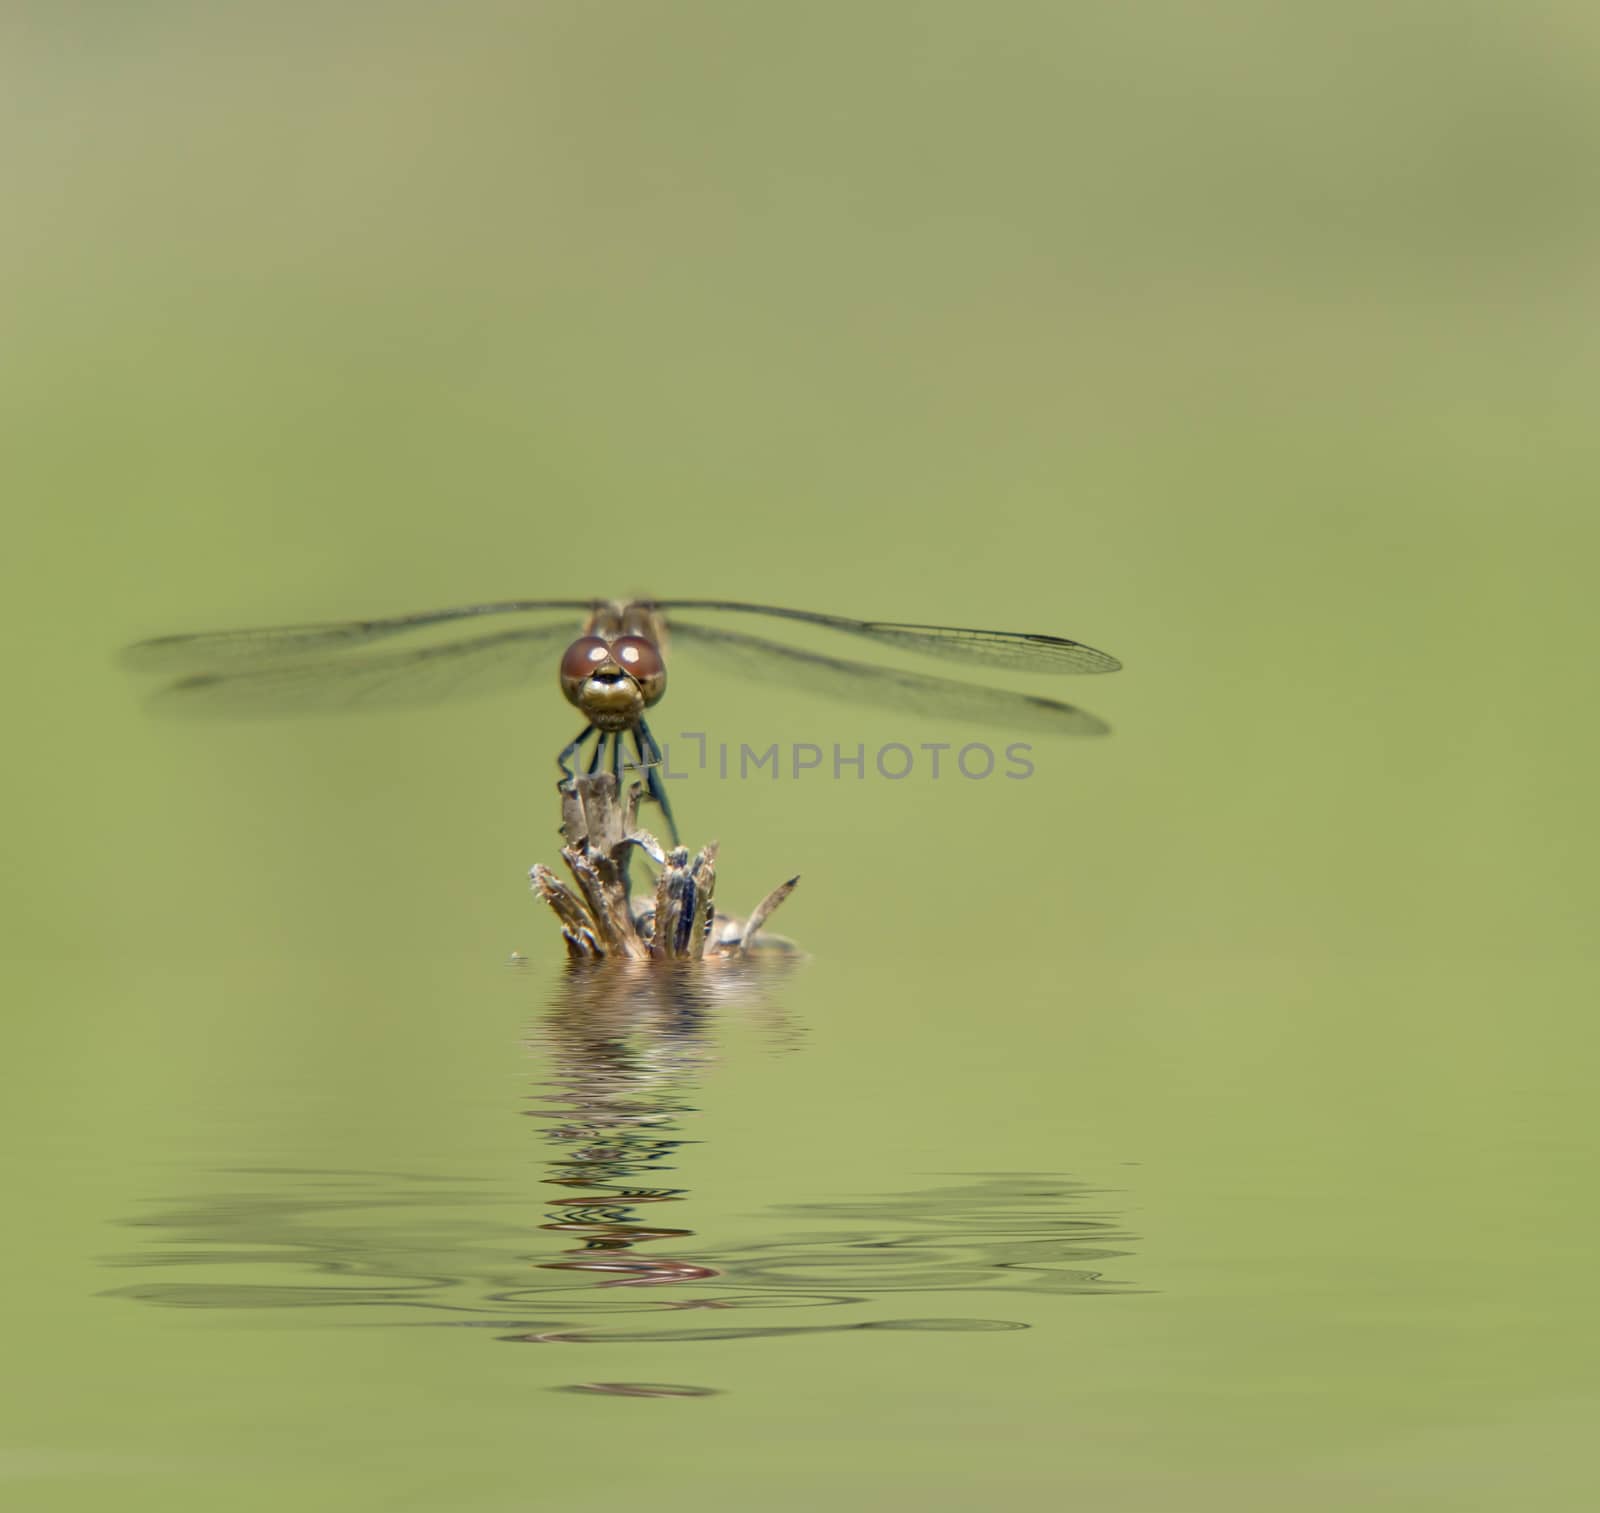 Dragonfly on a dry branch by Epitavi